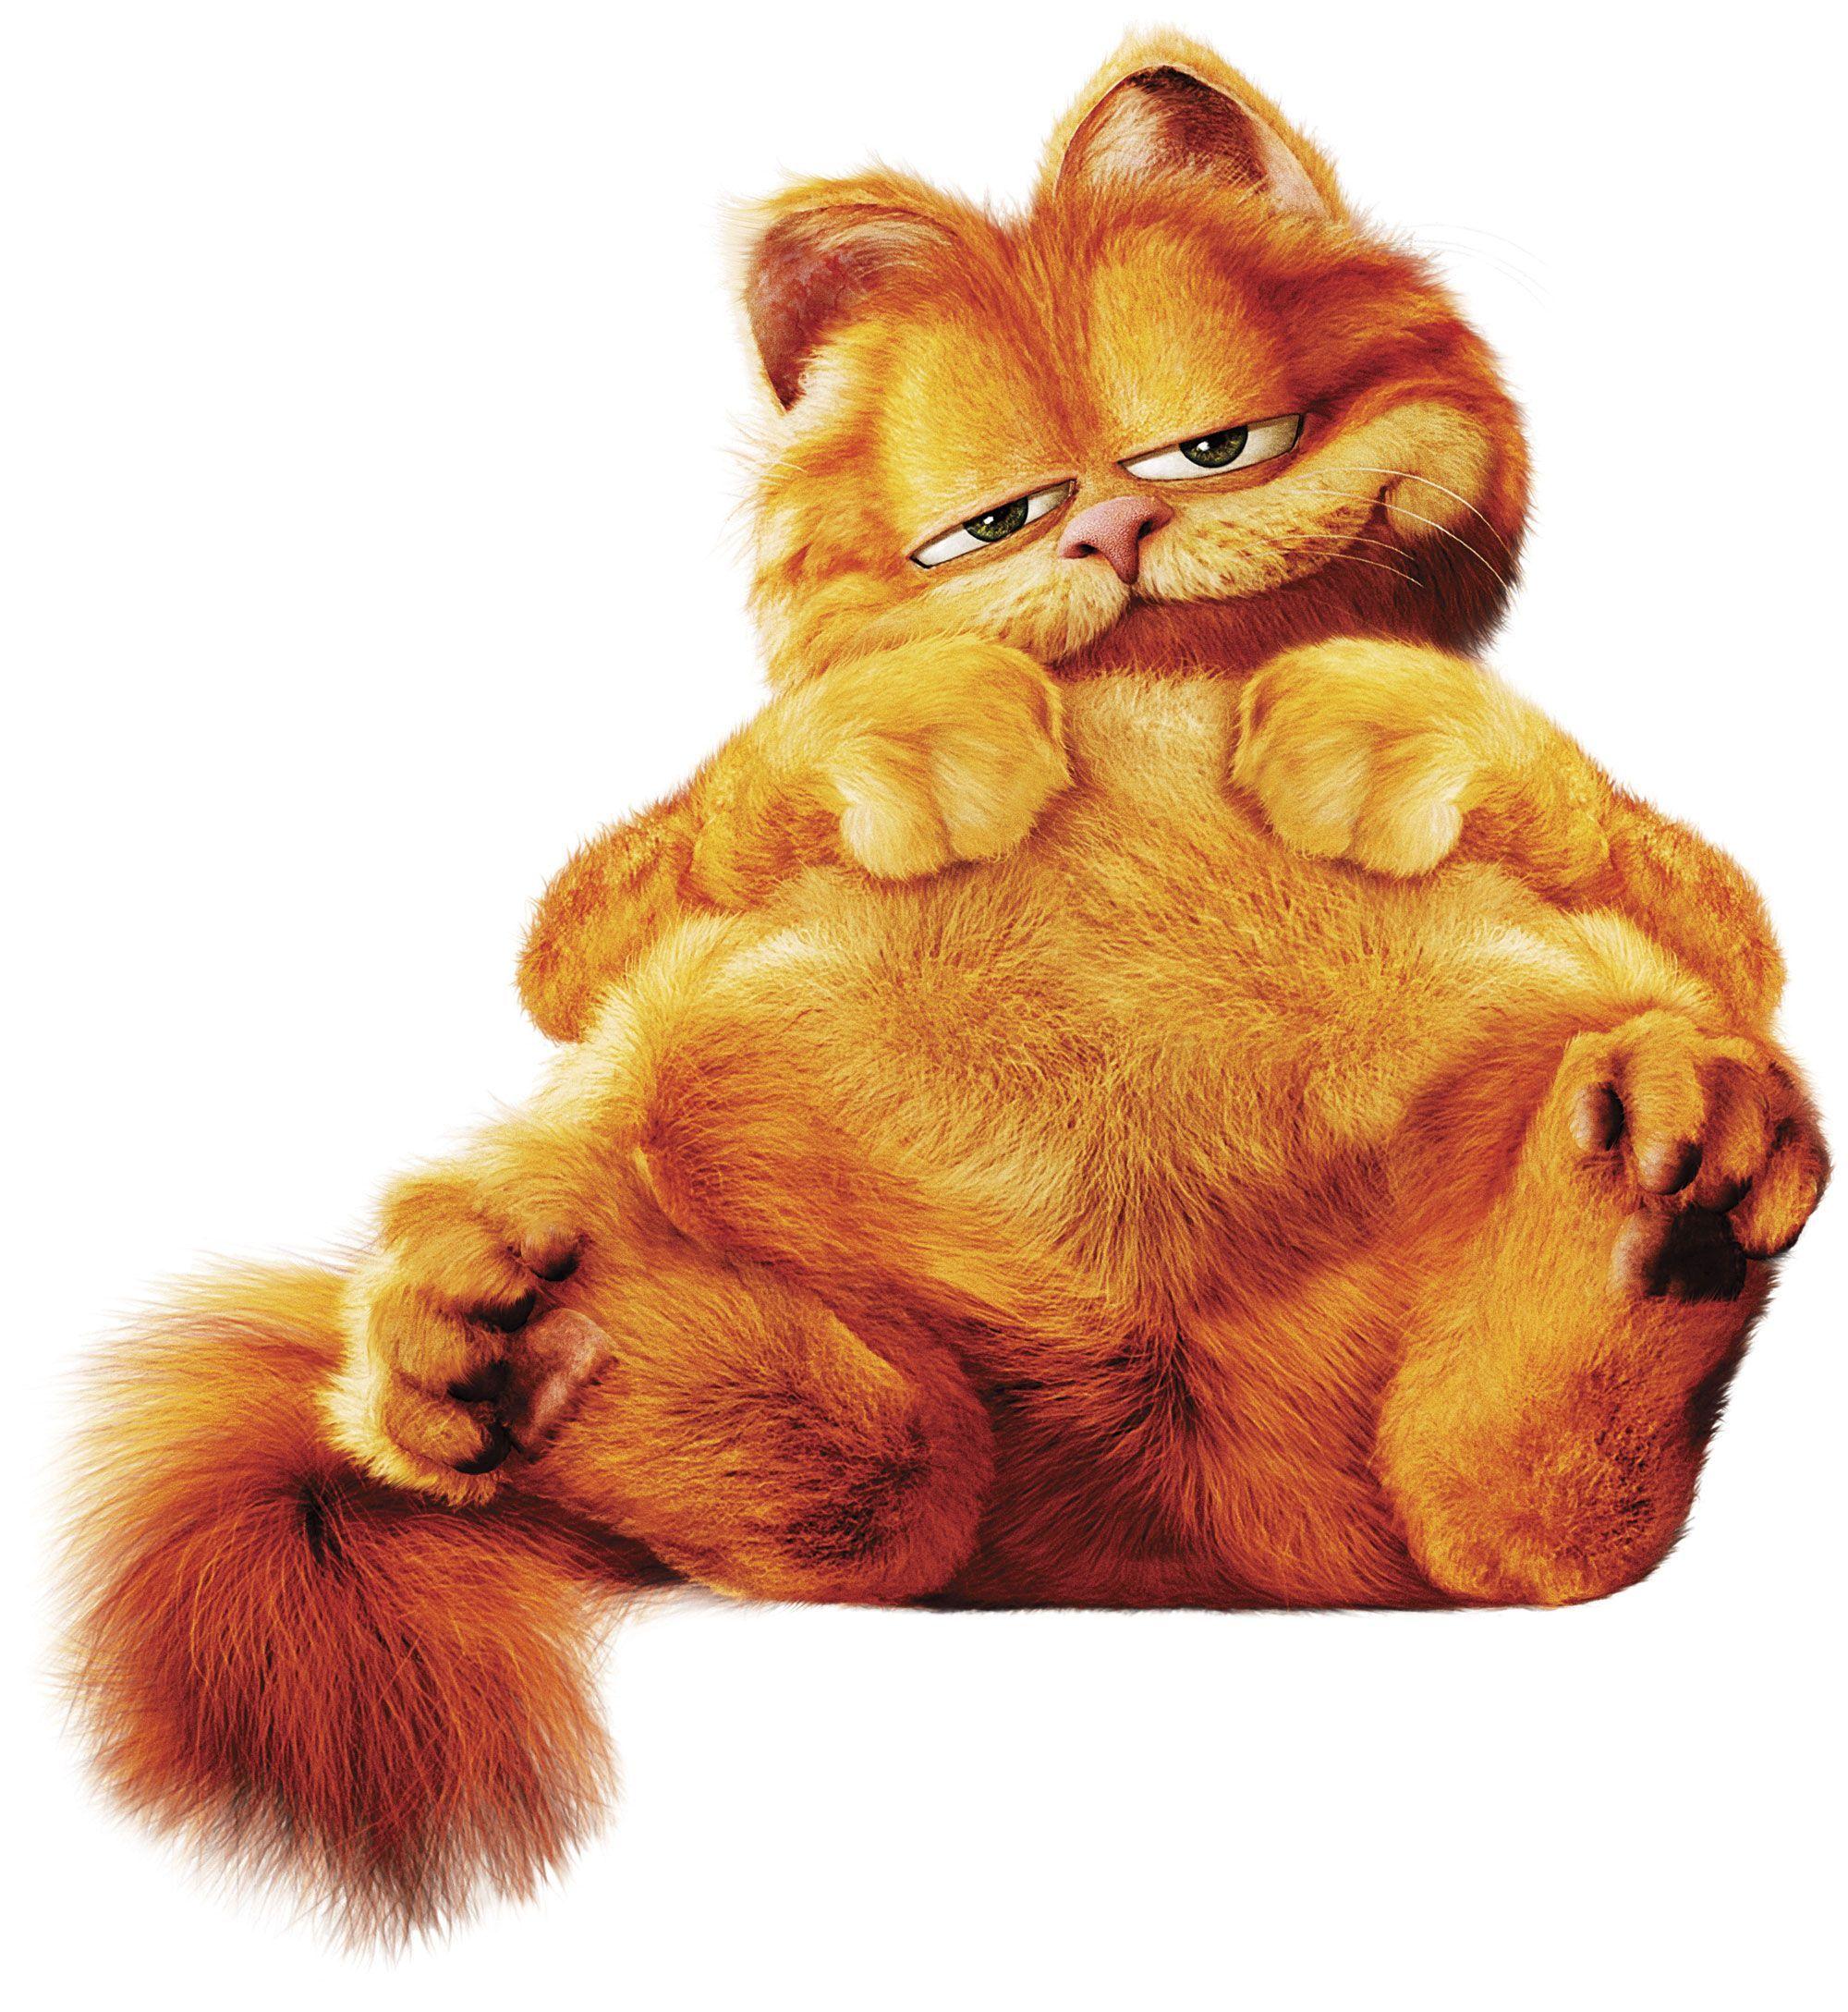 Garfield ideas. garfield, garfield cartoon, garfield wallpaper